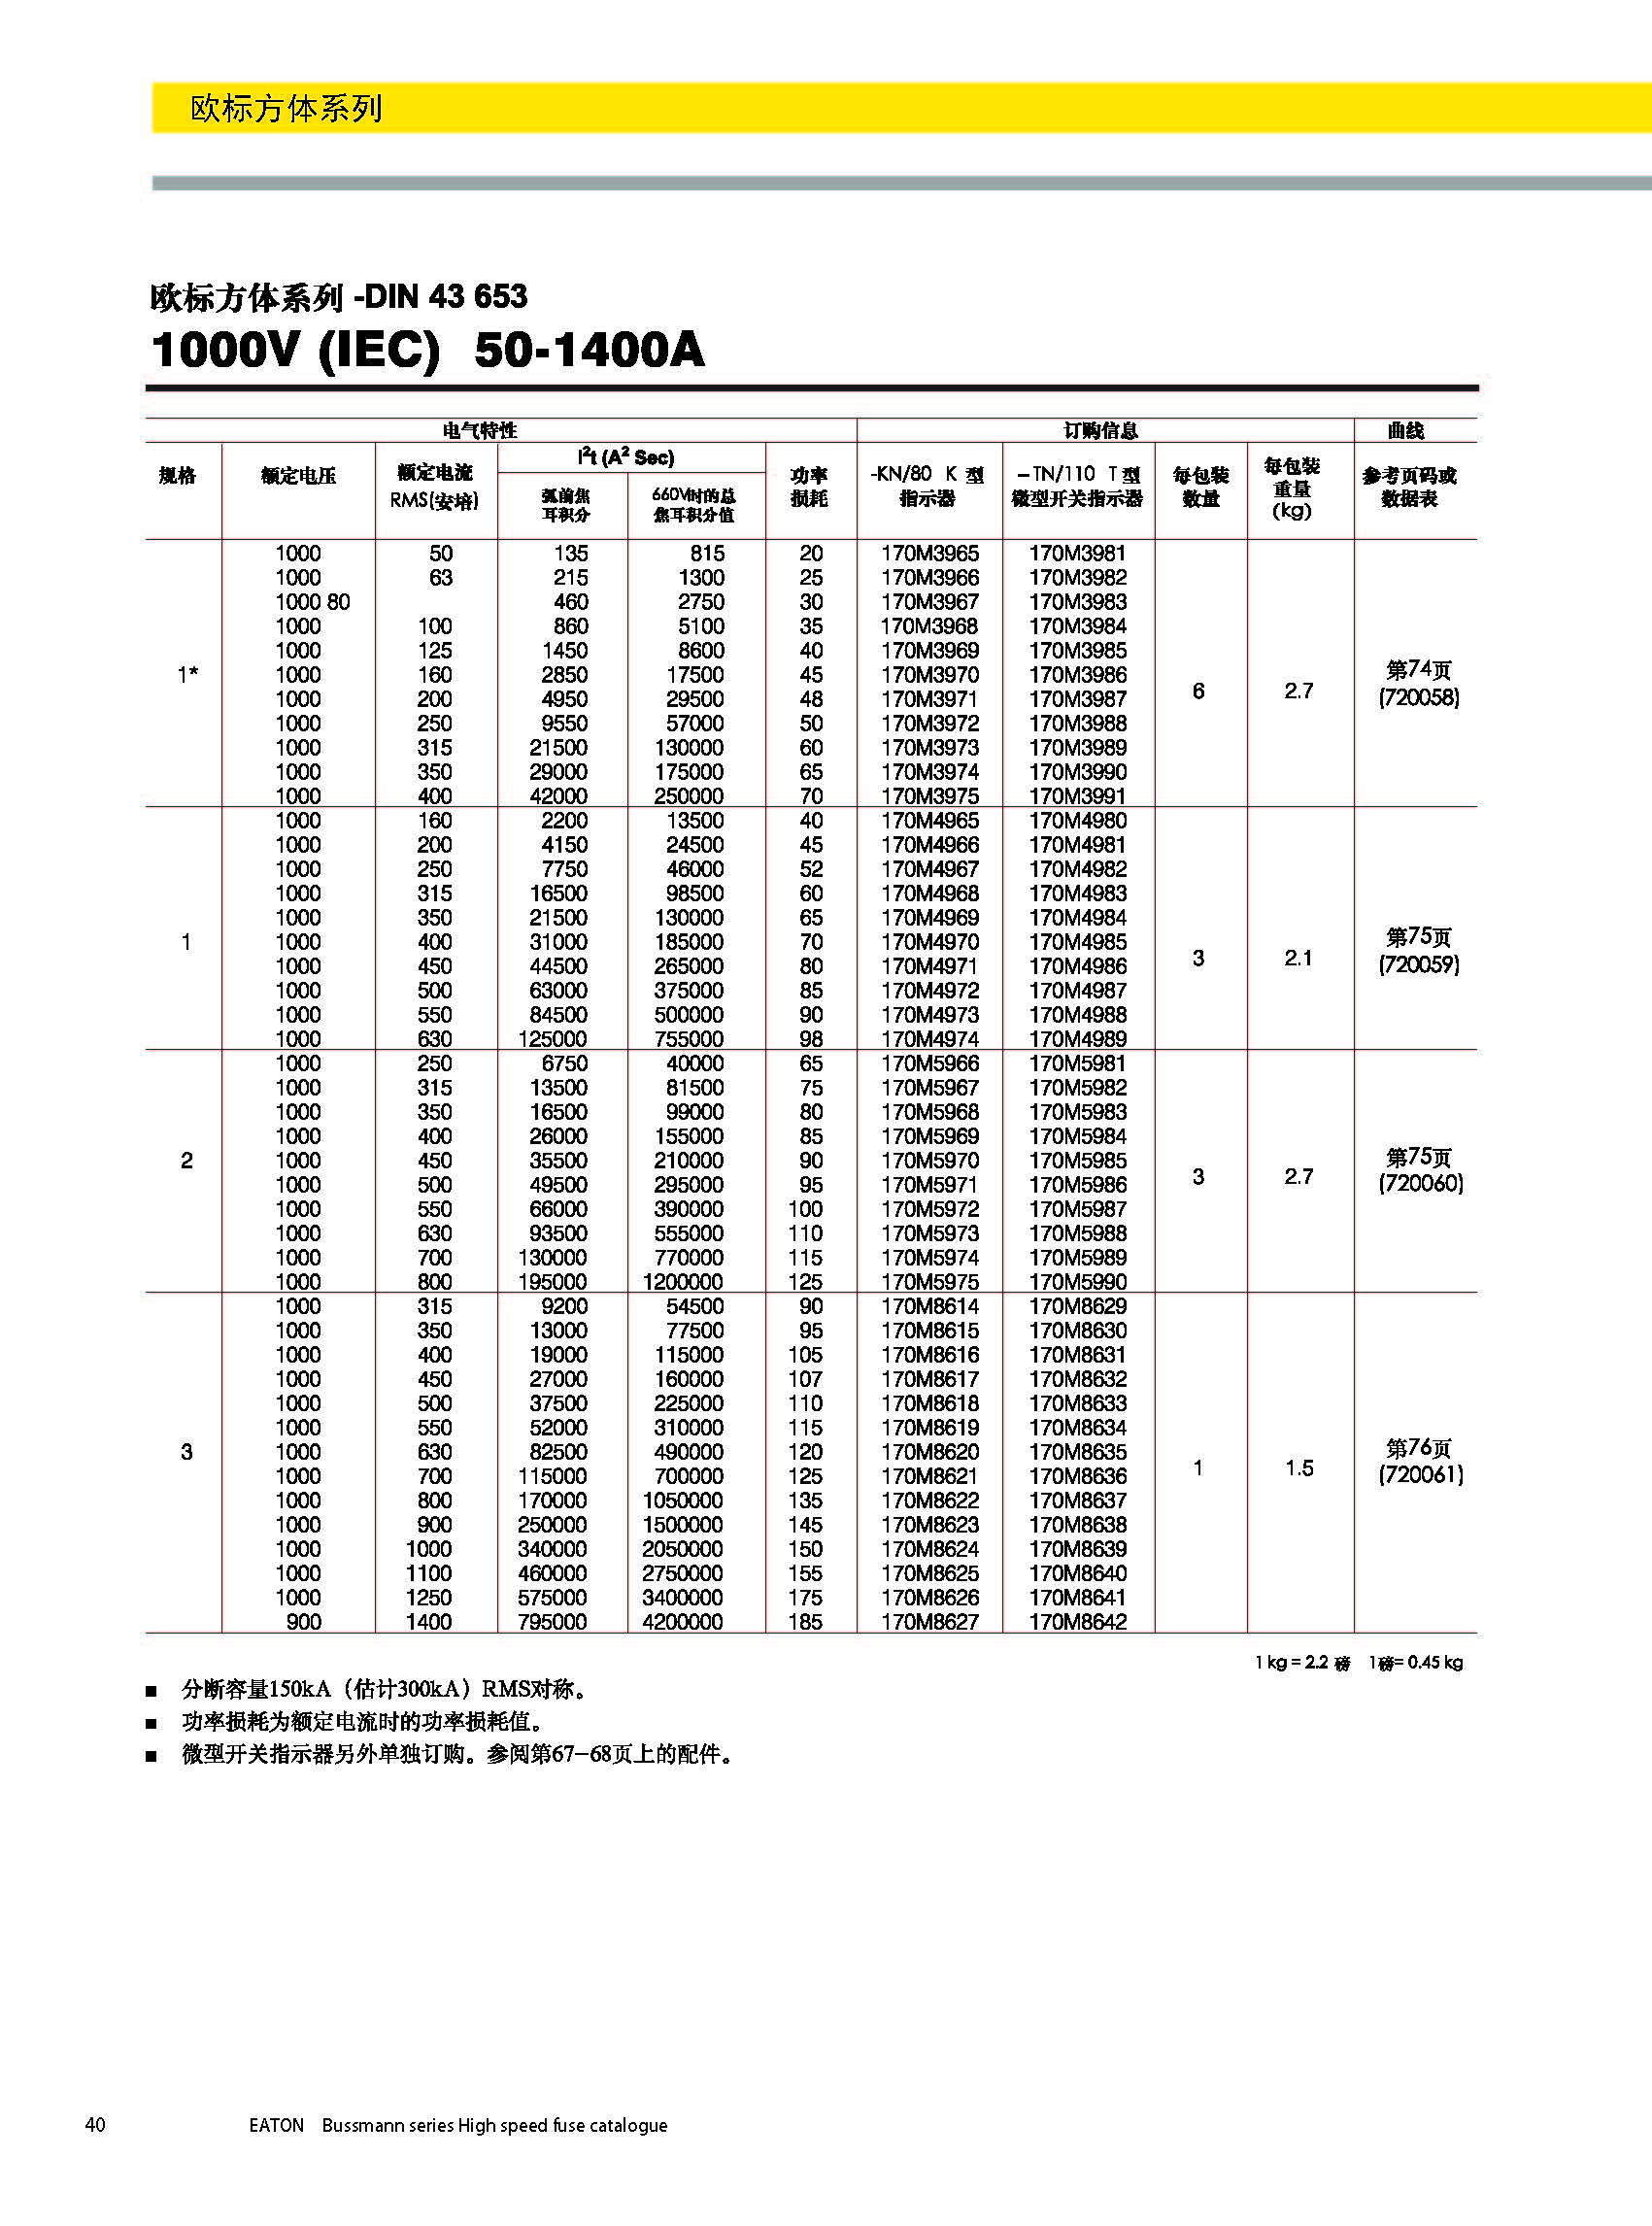 欧标方体DIN43653 1000V 50-1400A产品选型参数